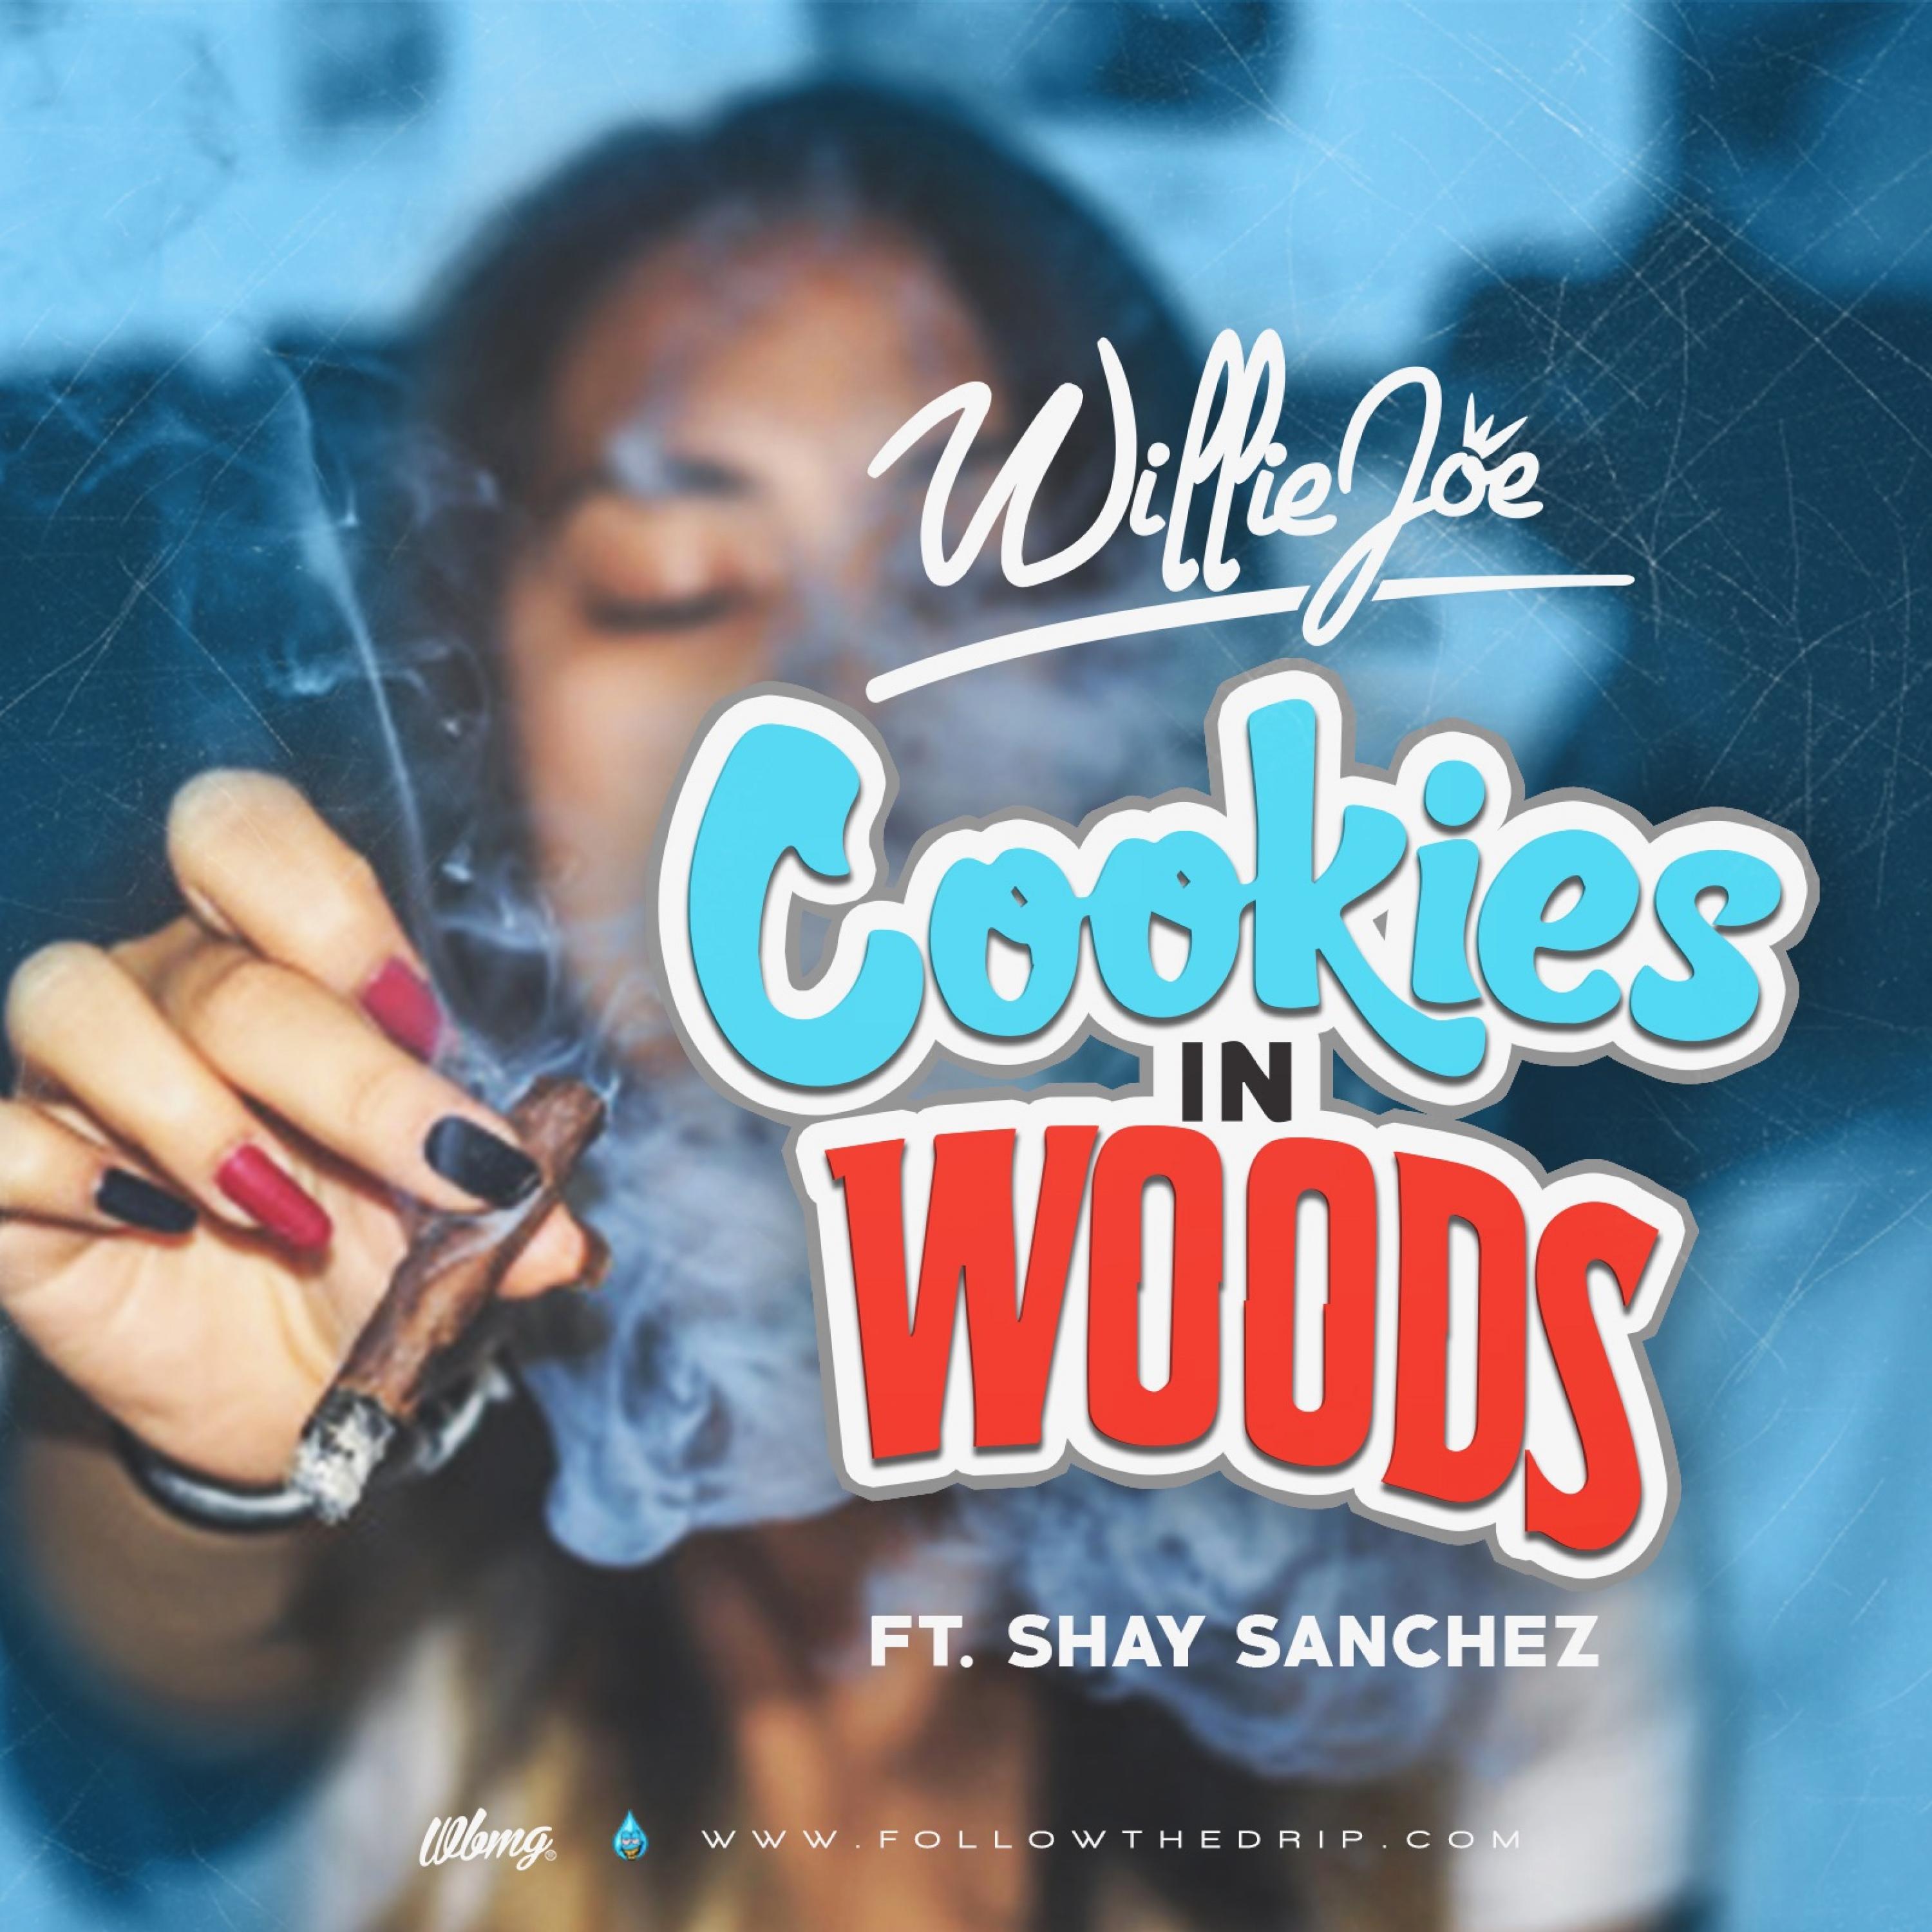 Cookies in Woods